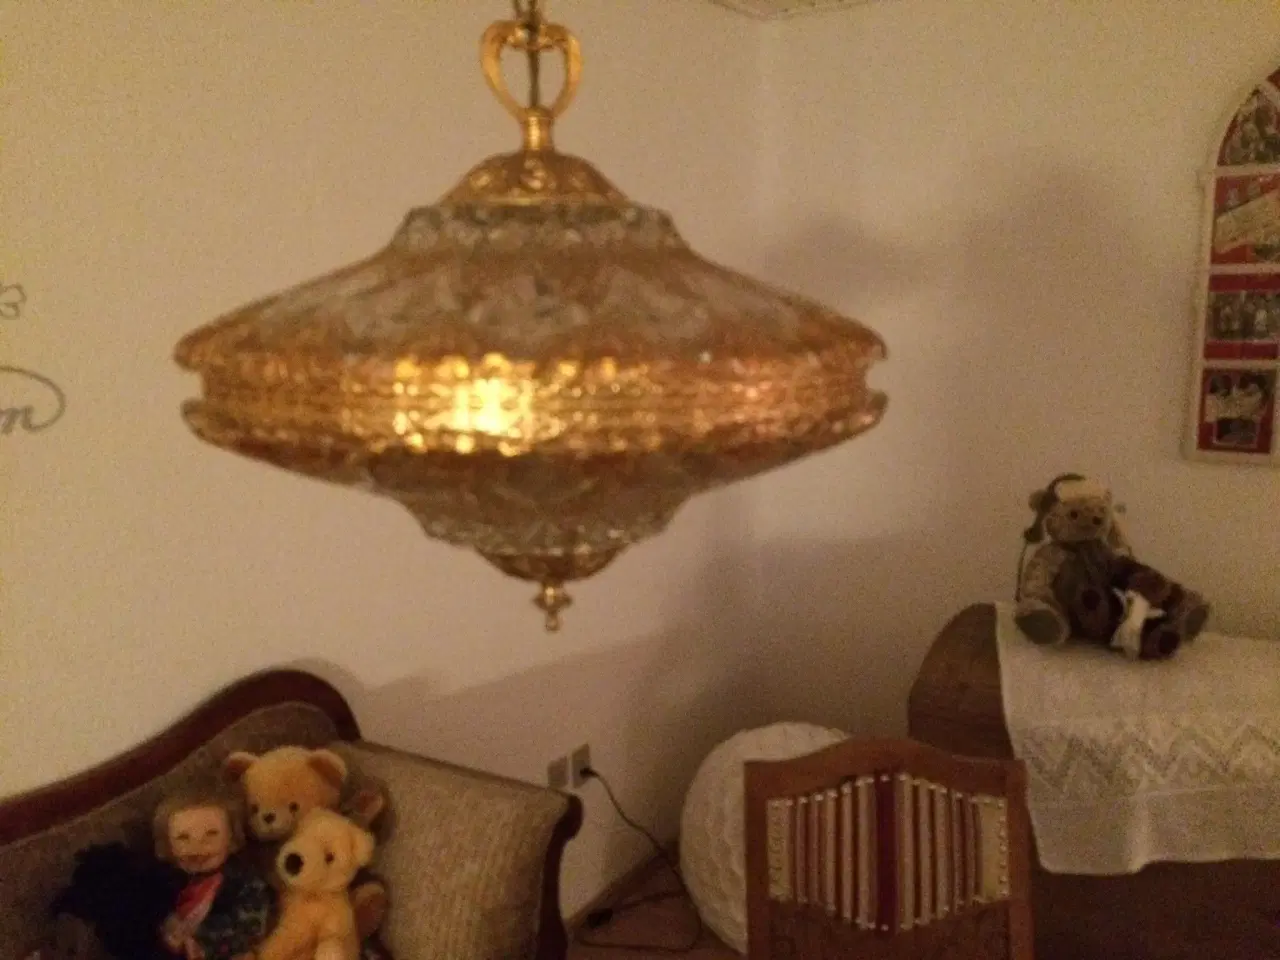 Billede 5 - Krystallampe med guldstaffering